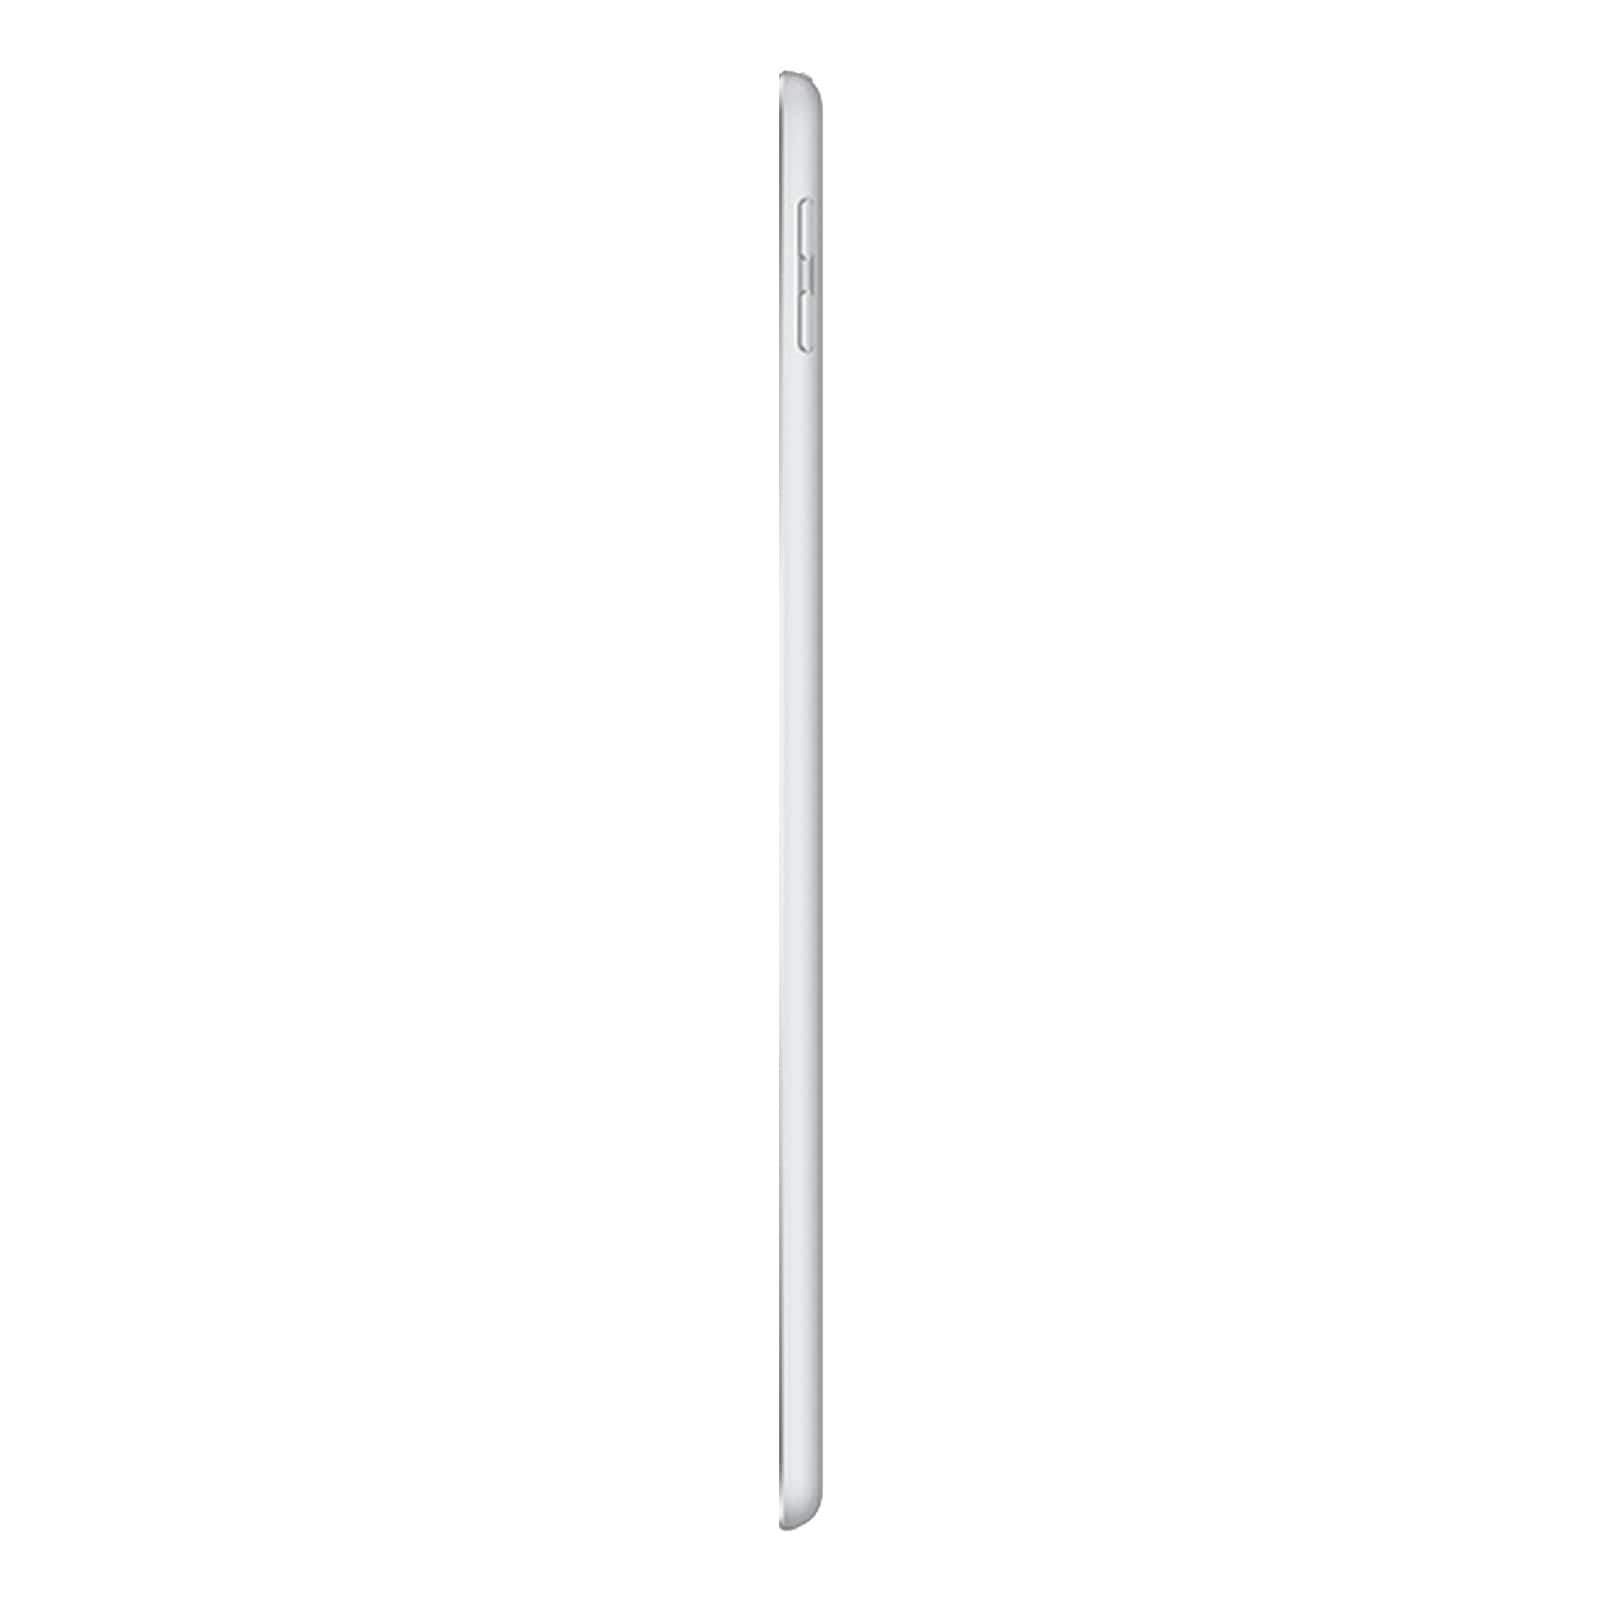 Apple iPad 6 32GB WiFi Silver - Good